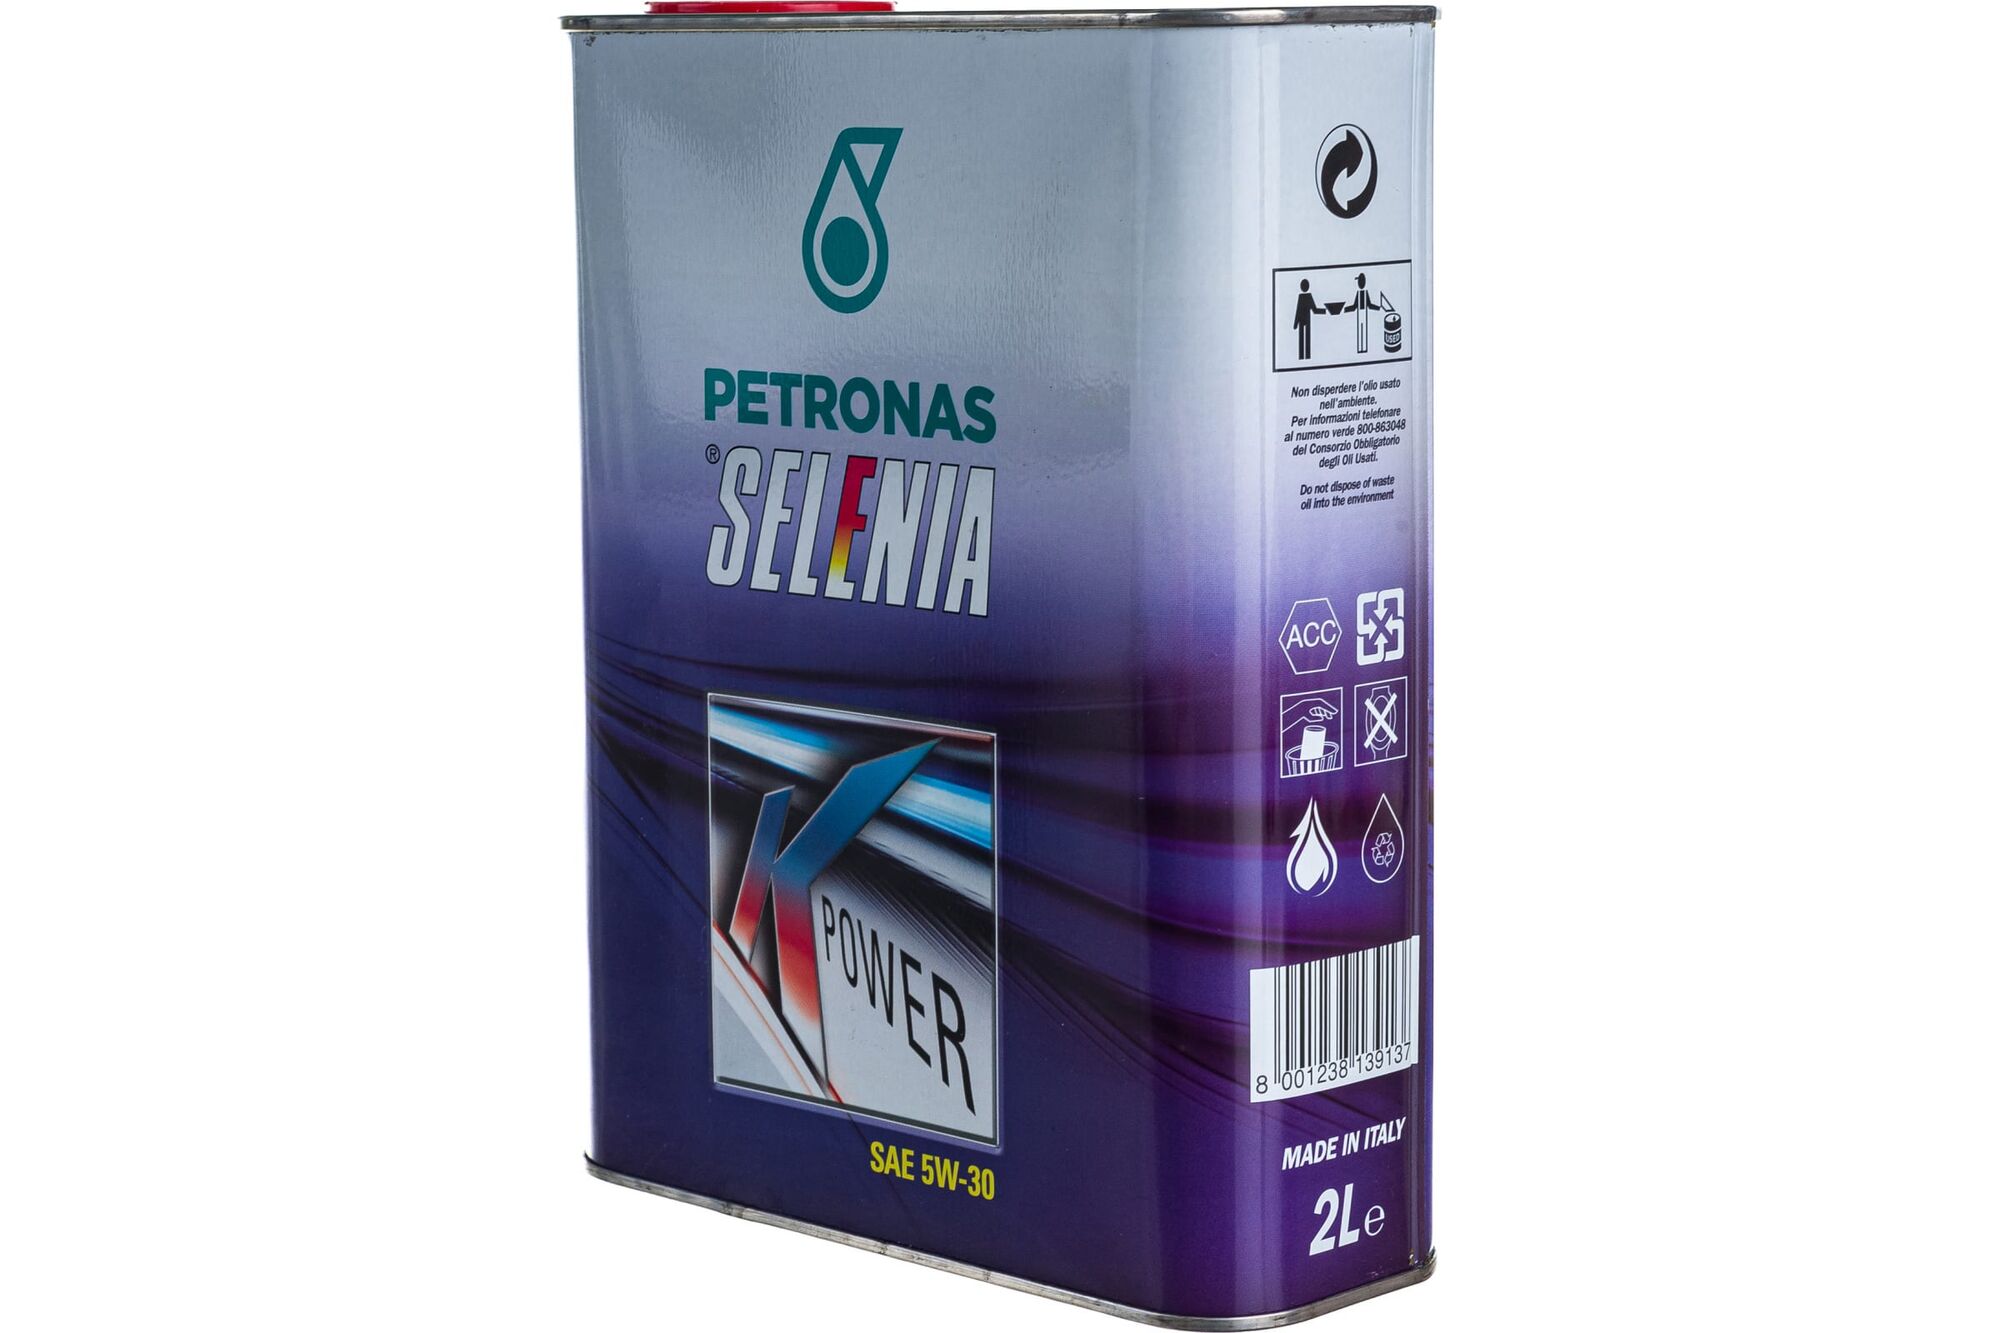 Моторное масло PETRONAS SELENIA К POWER синтетическое, 5W30, 2 л 70025GC5EU Petronas